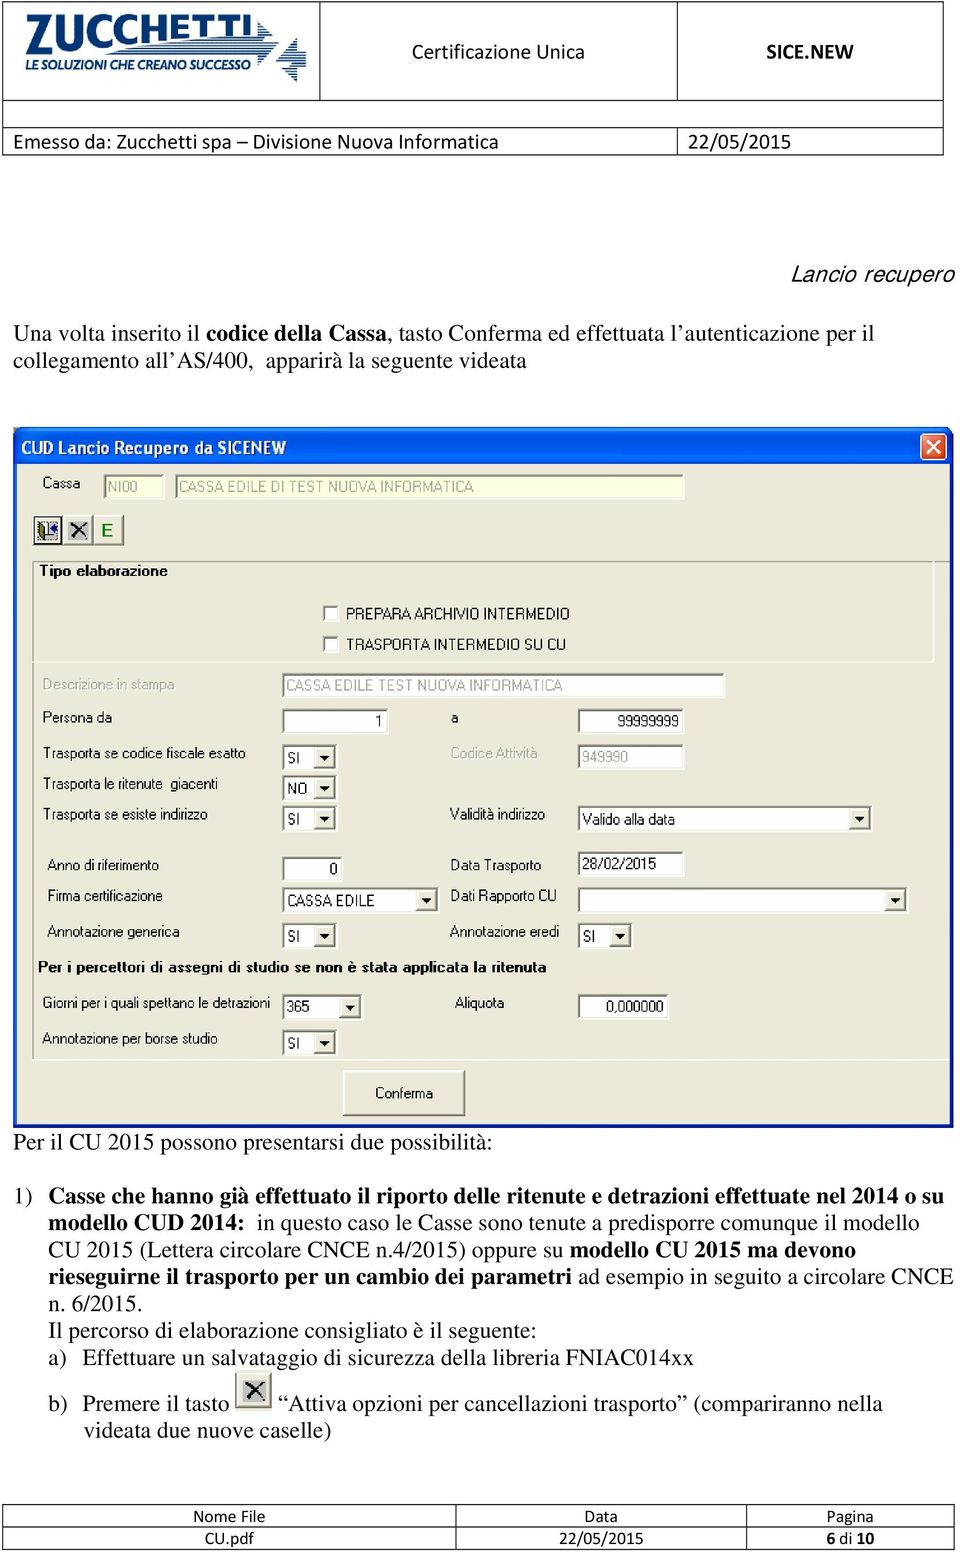 modello CU 2015 (Lettera circolare CNCE n.4/2015) oppure su modello CU 2015 ma devono rieseguirne il trasporto per un cambio dei parametri ad esempio in seguito a circolare CNCE n. 6/2015.